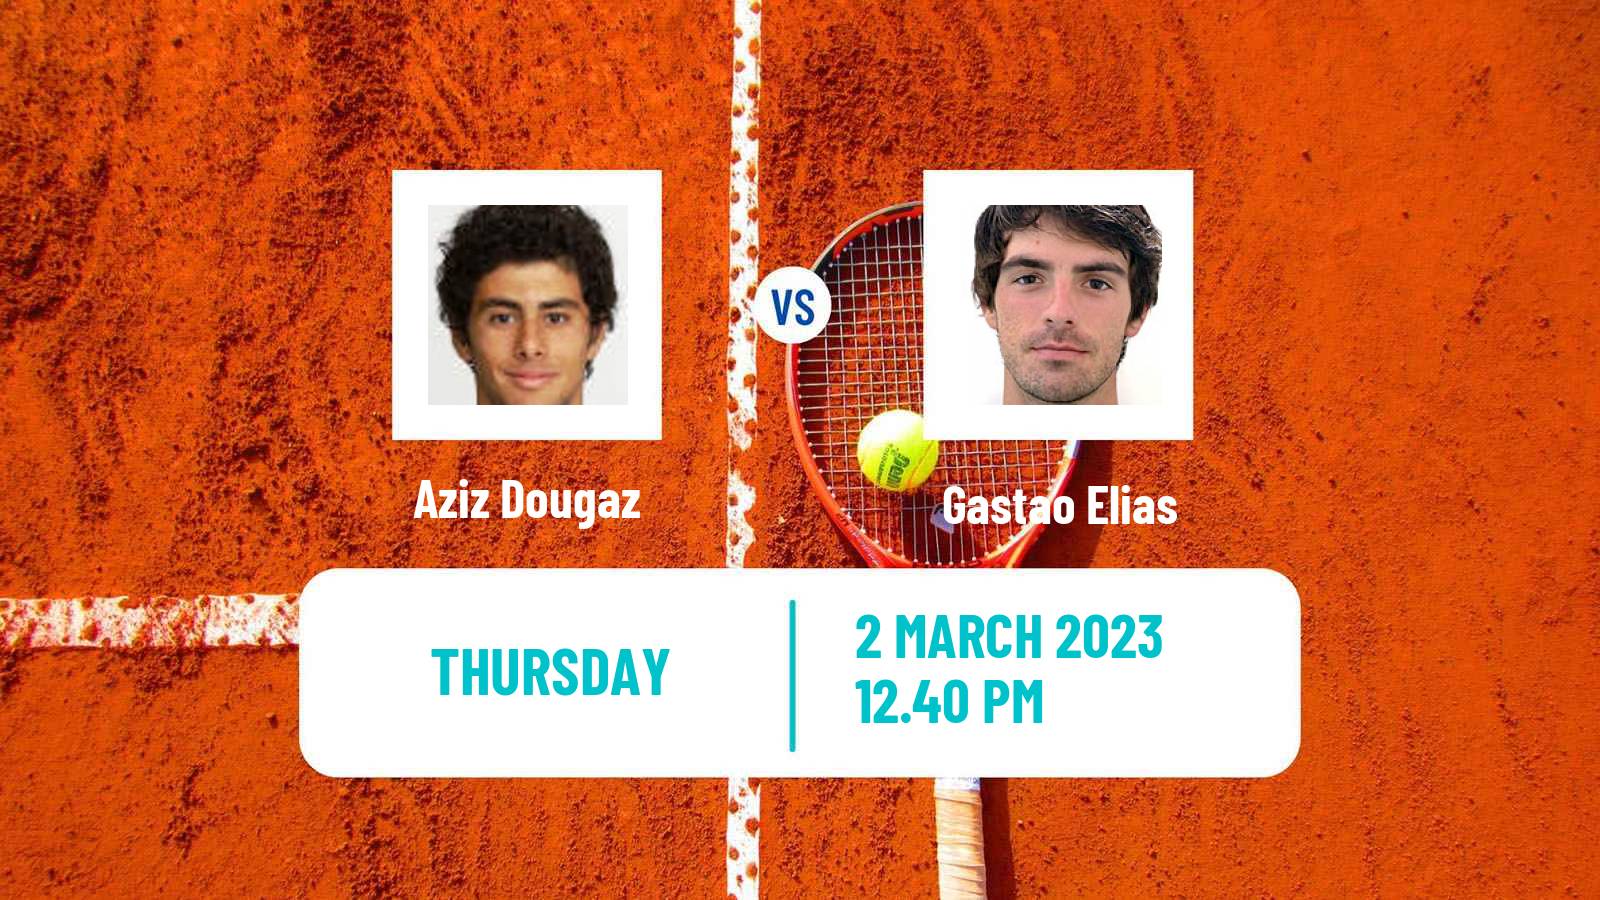 Tennis ATP Challenger Aziz Dougaz - Gastao Elias